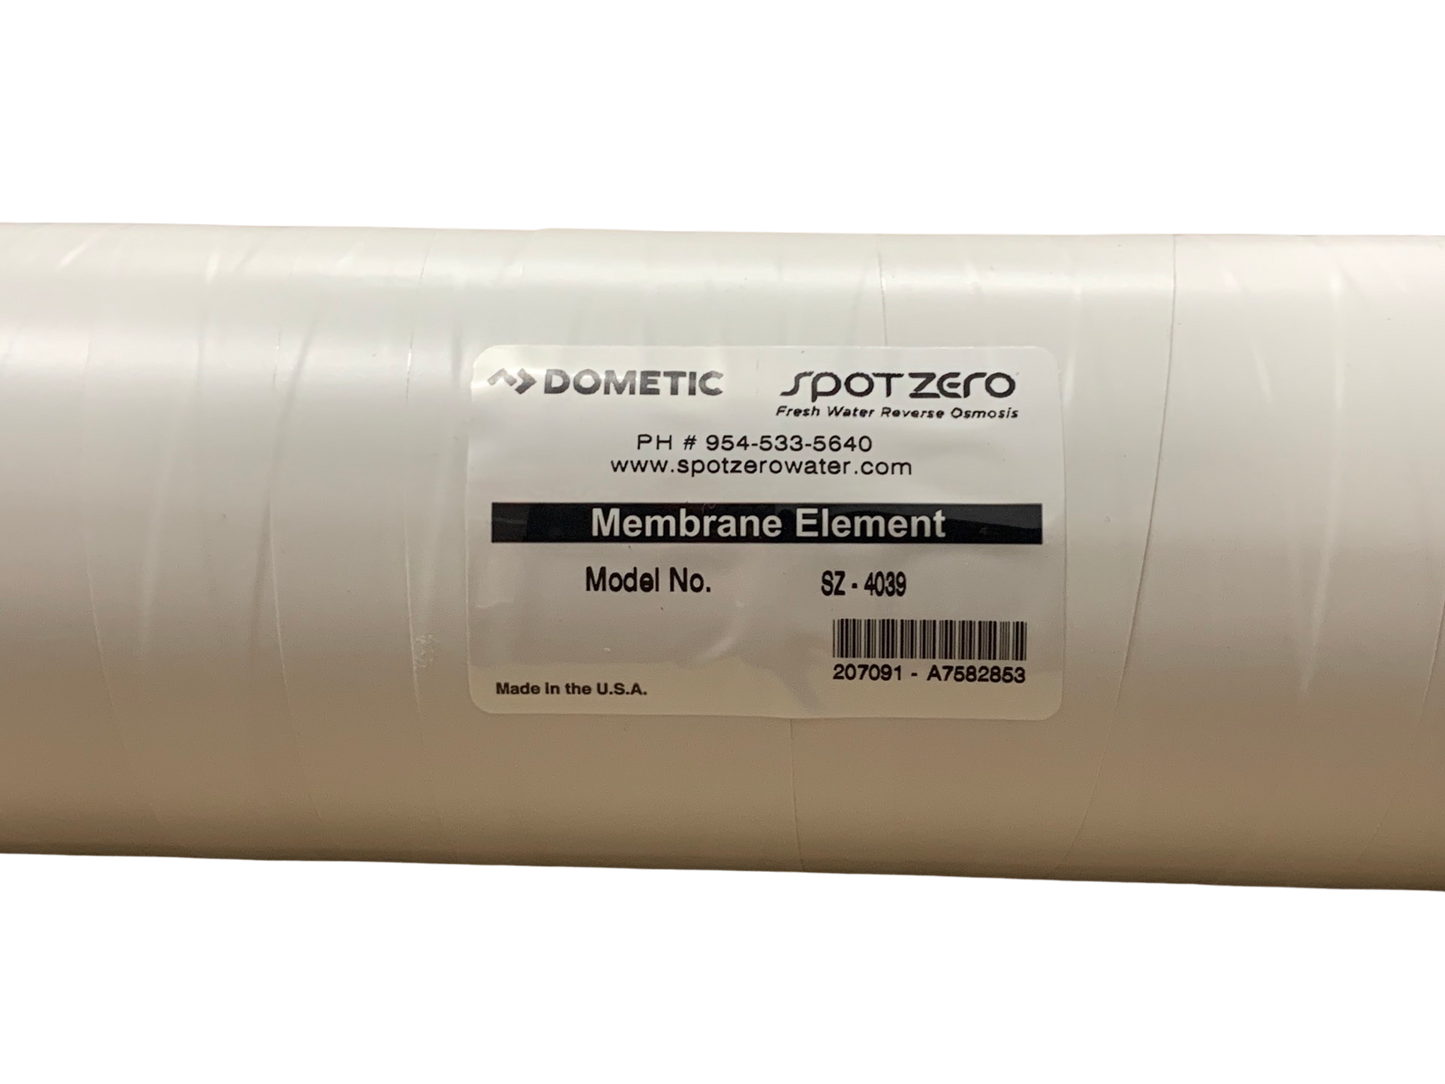 Spot Zero 4039 Membrane (PVC Black Ends)